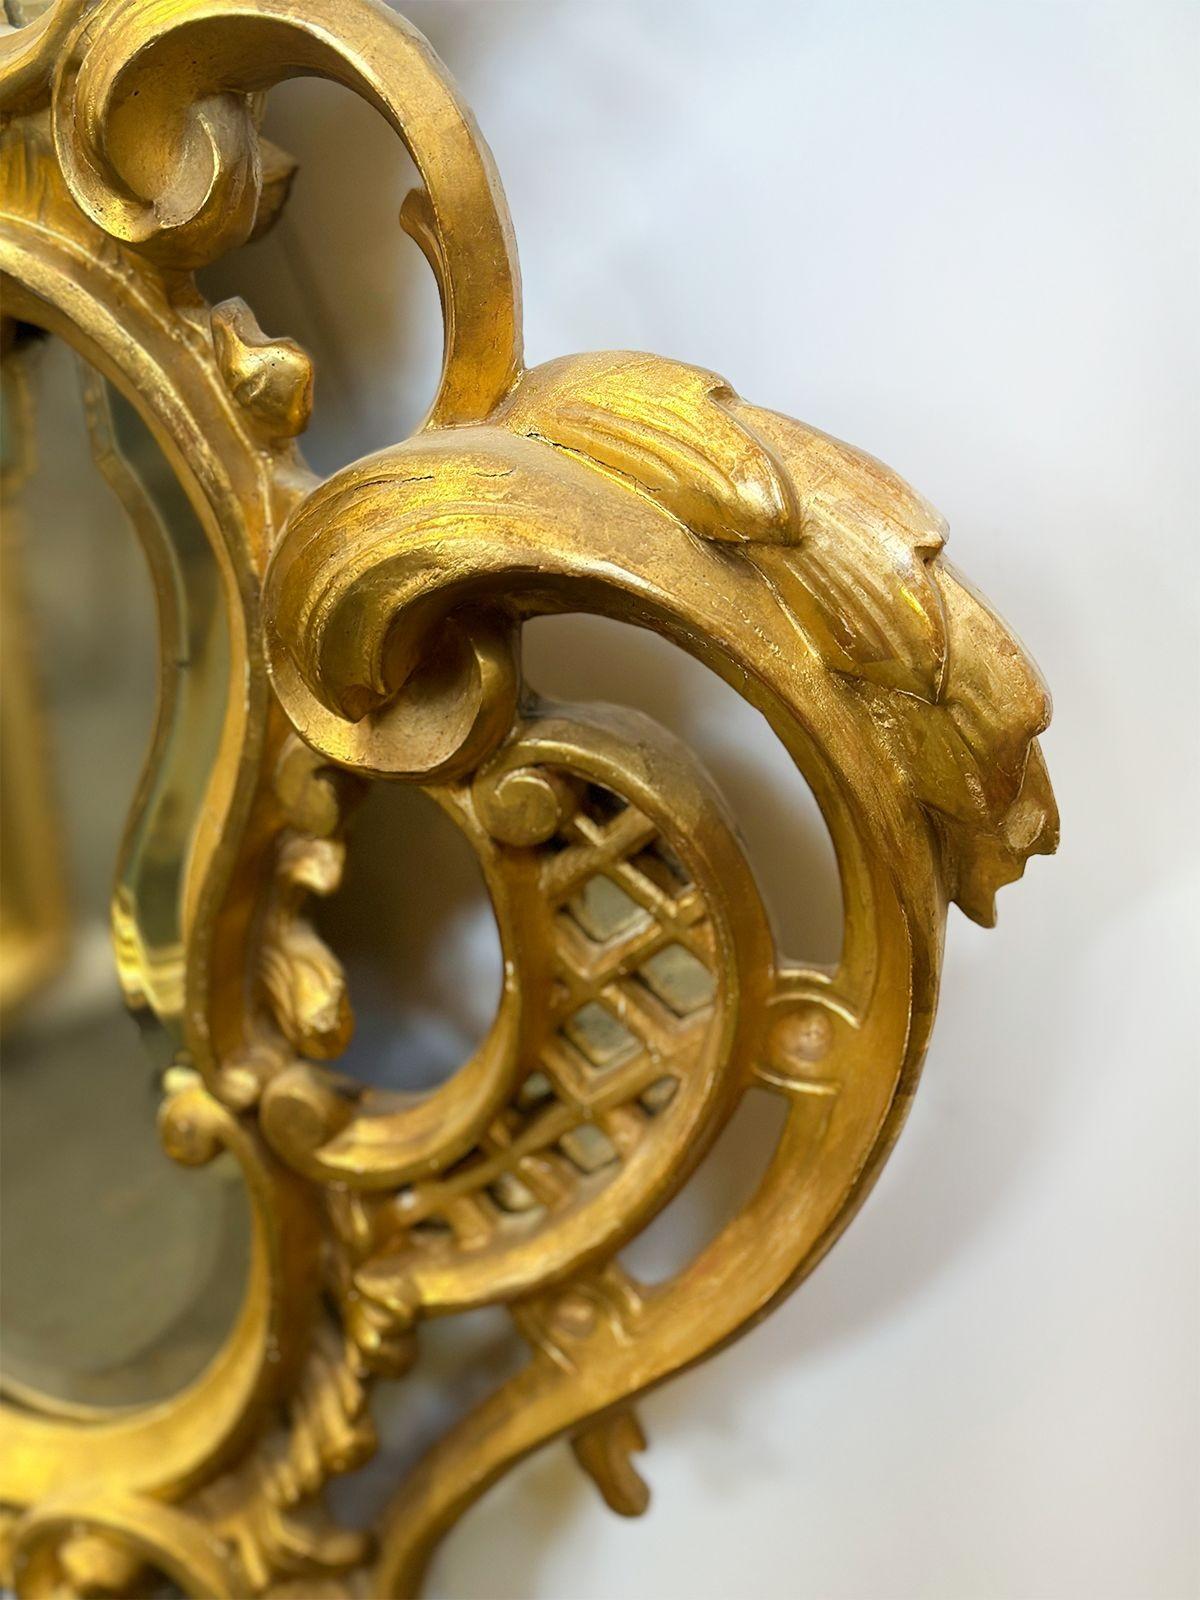 Paire de magnifiques miroirs en bois doré sculptés à la main, fabriqués en Italie vers les années 1900. Les cadres de ces miroirs sont resplendissants de bois doré sculpté à la main, magnifiquement ornés de motifs feuillagés complexes. Ces motifs,